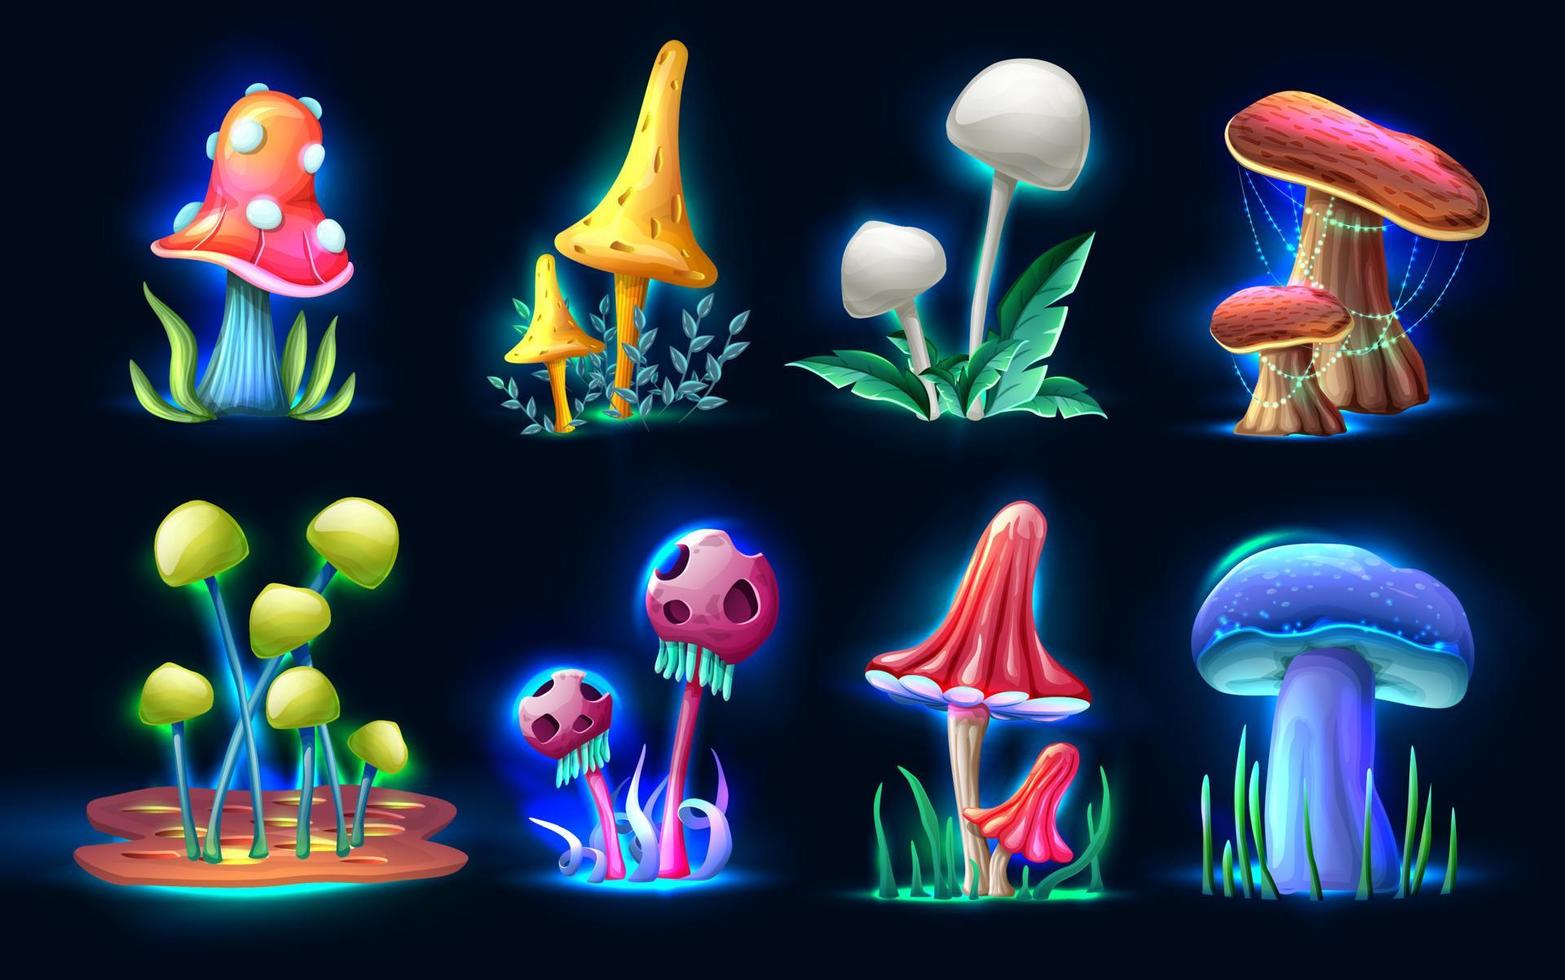 colección de hongos mágicos de fantasía de estilo de dibujos animados vectoriales que brillan en la oscuridad, aislados en fondo blanco. para web, videojuegos, interfaz de usuario, impresión de diseño. vector